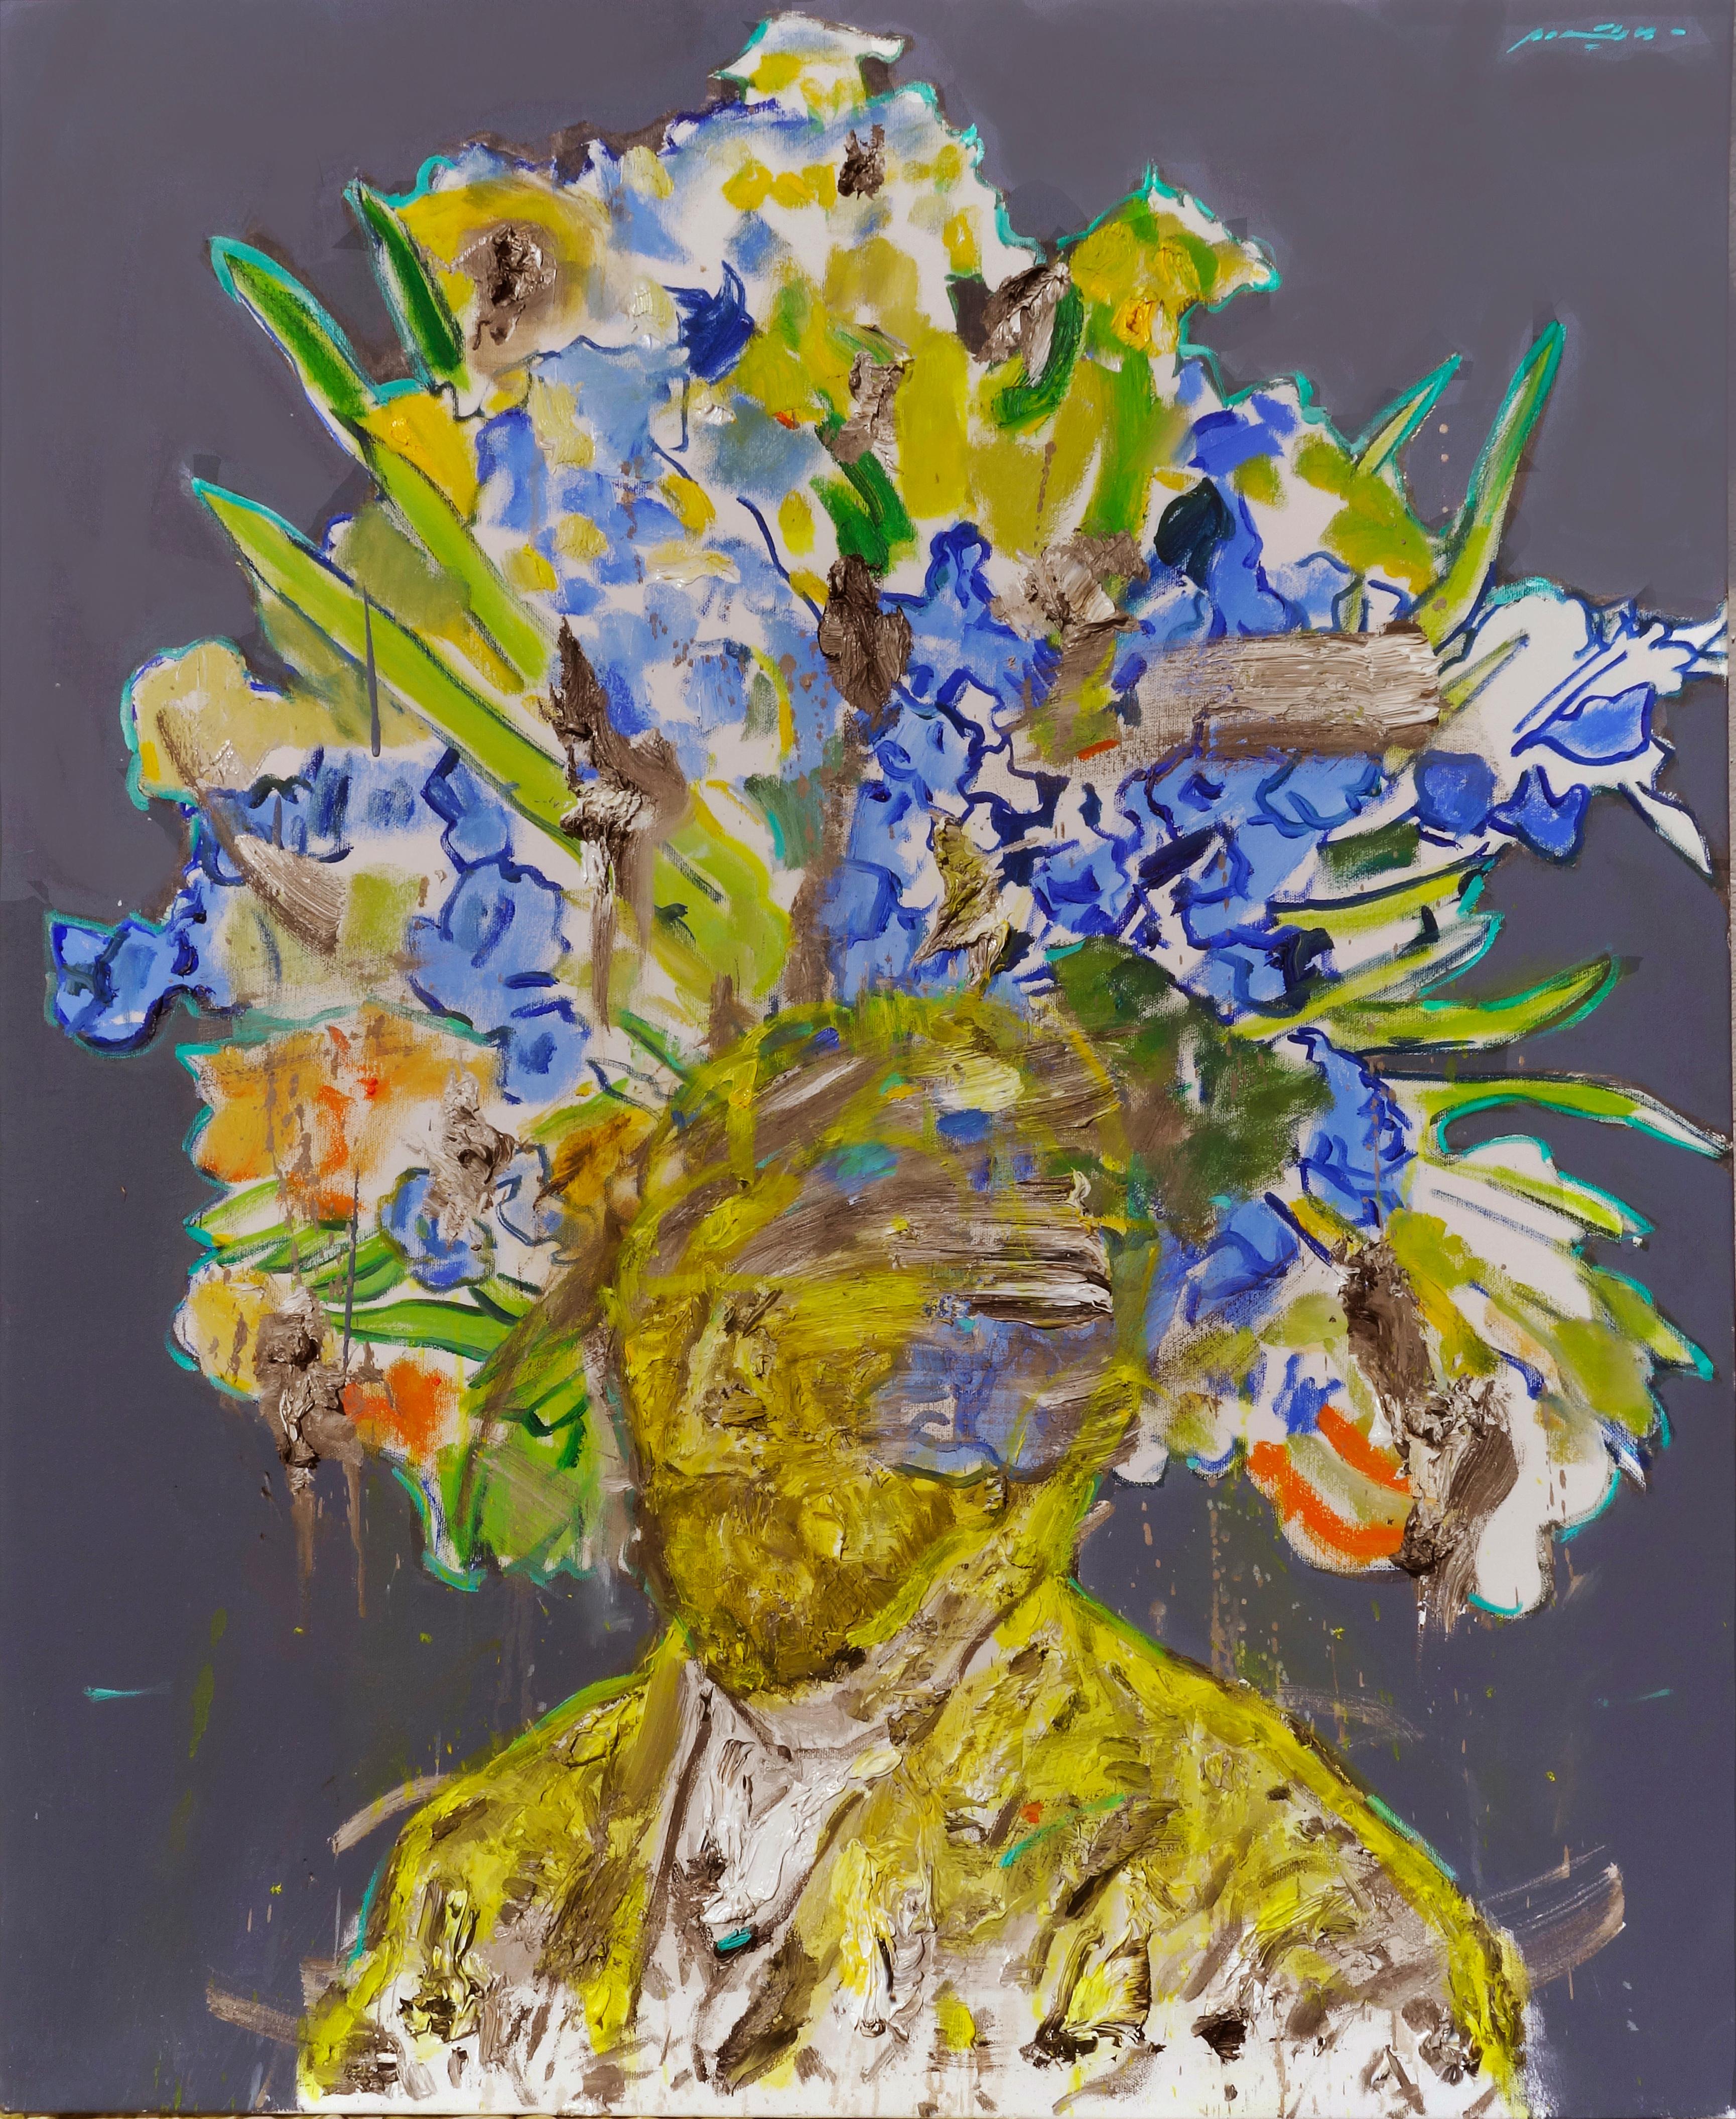 Milan Markovich Portrait Painting - Brainstorm - contemporary oil on canvas portrait of artist Vincent Van Gogh